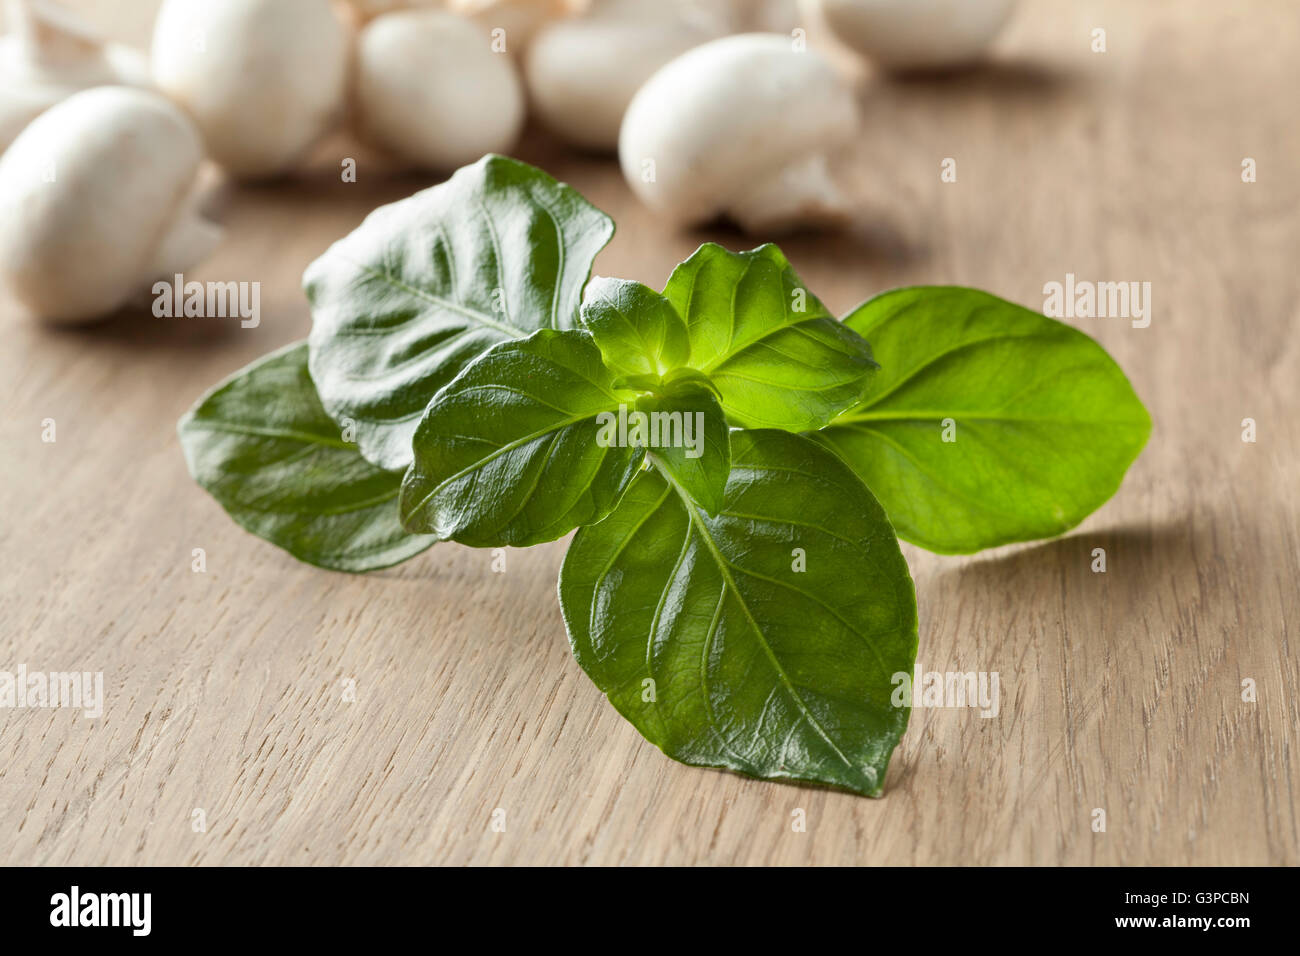 Matières premières fraîches champignon vert feuilles des plantes Banque D'Images